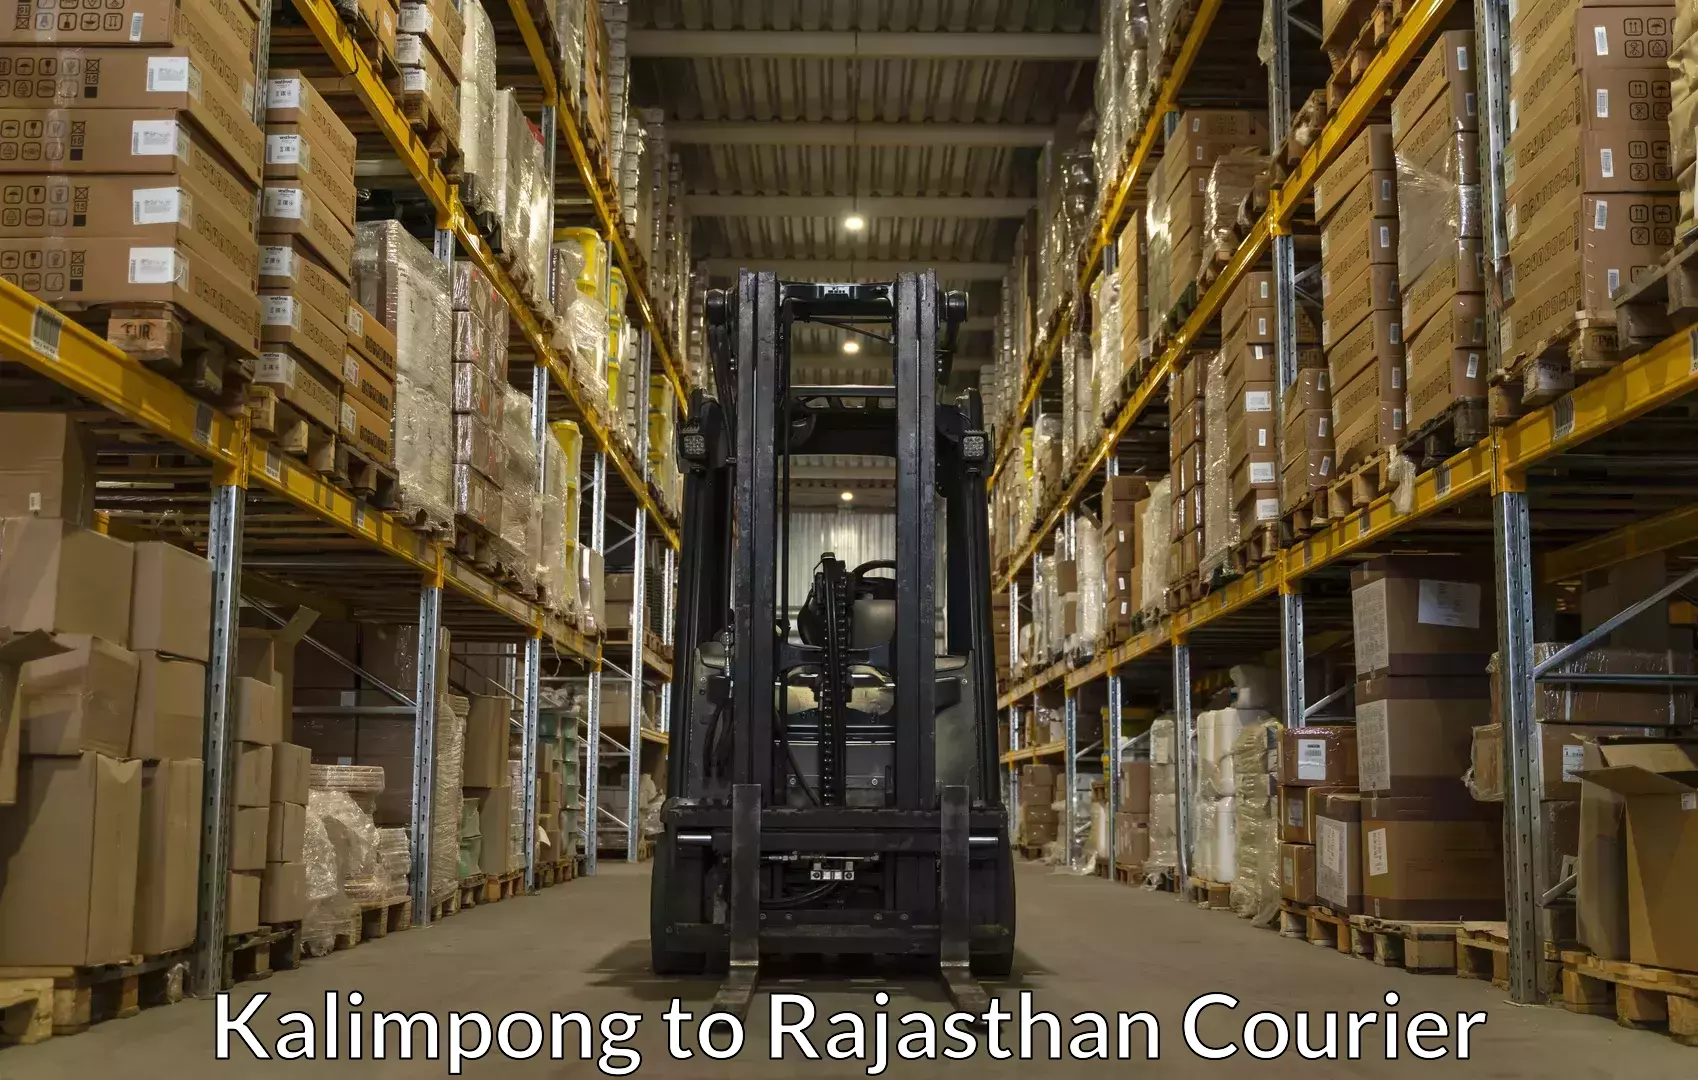 Baggage transport network Kalimpong to Rajasthan